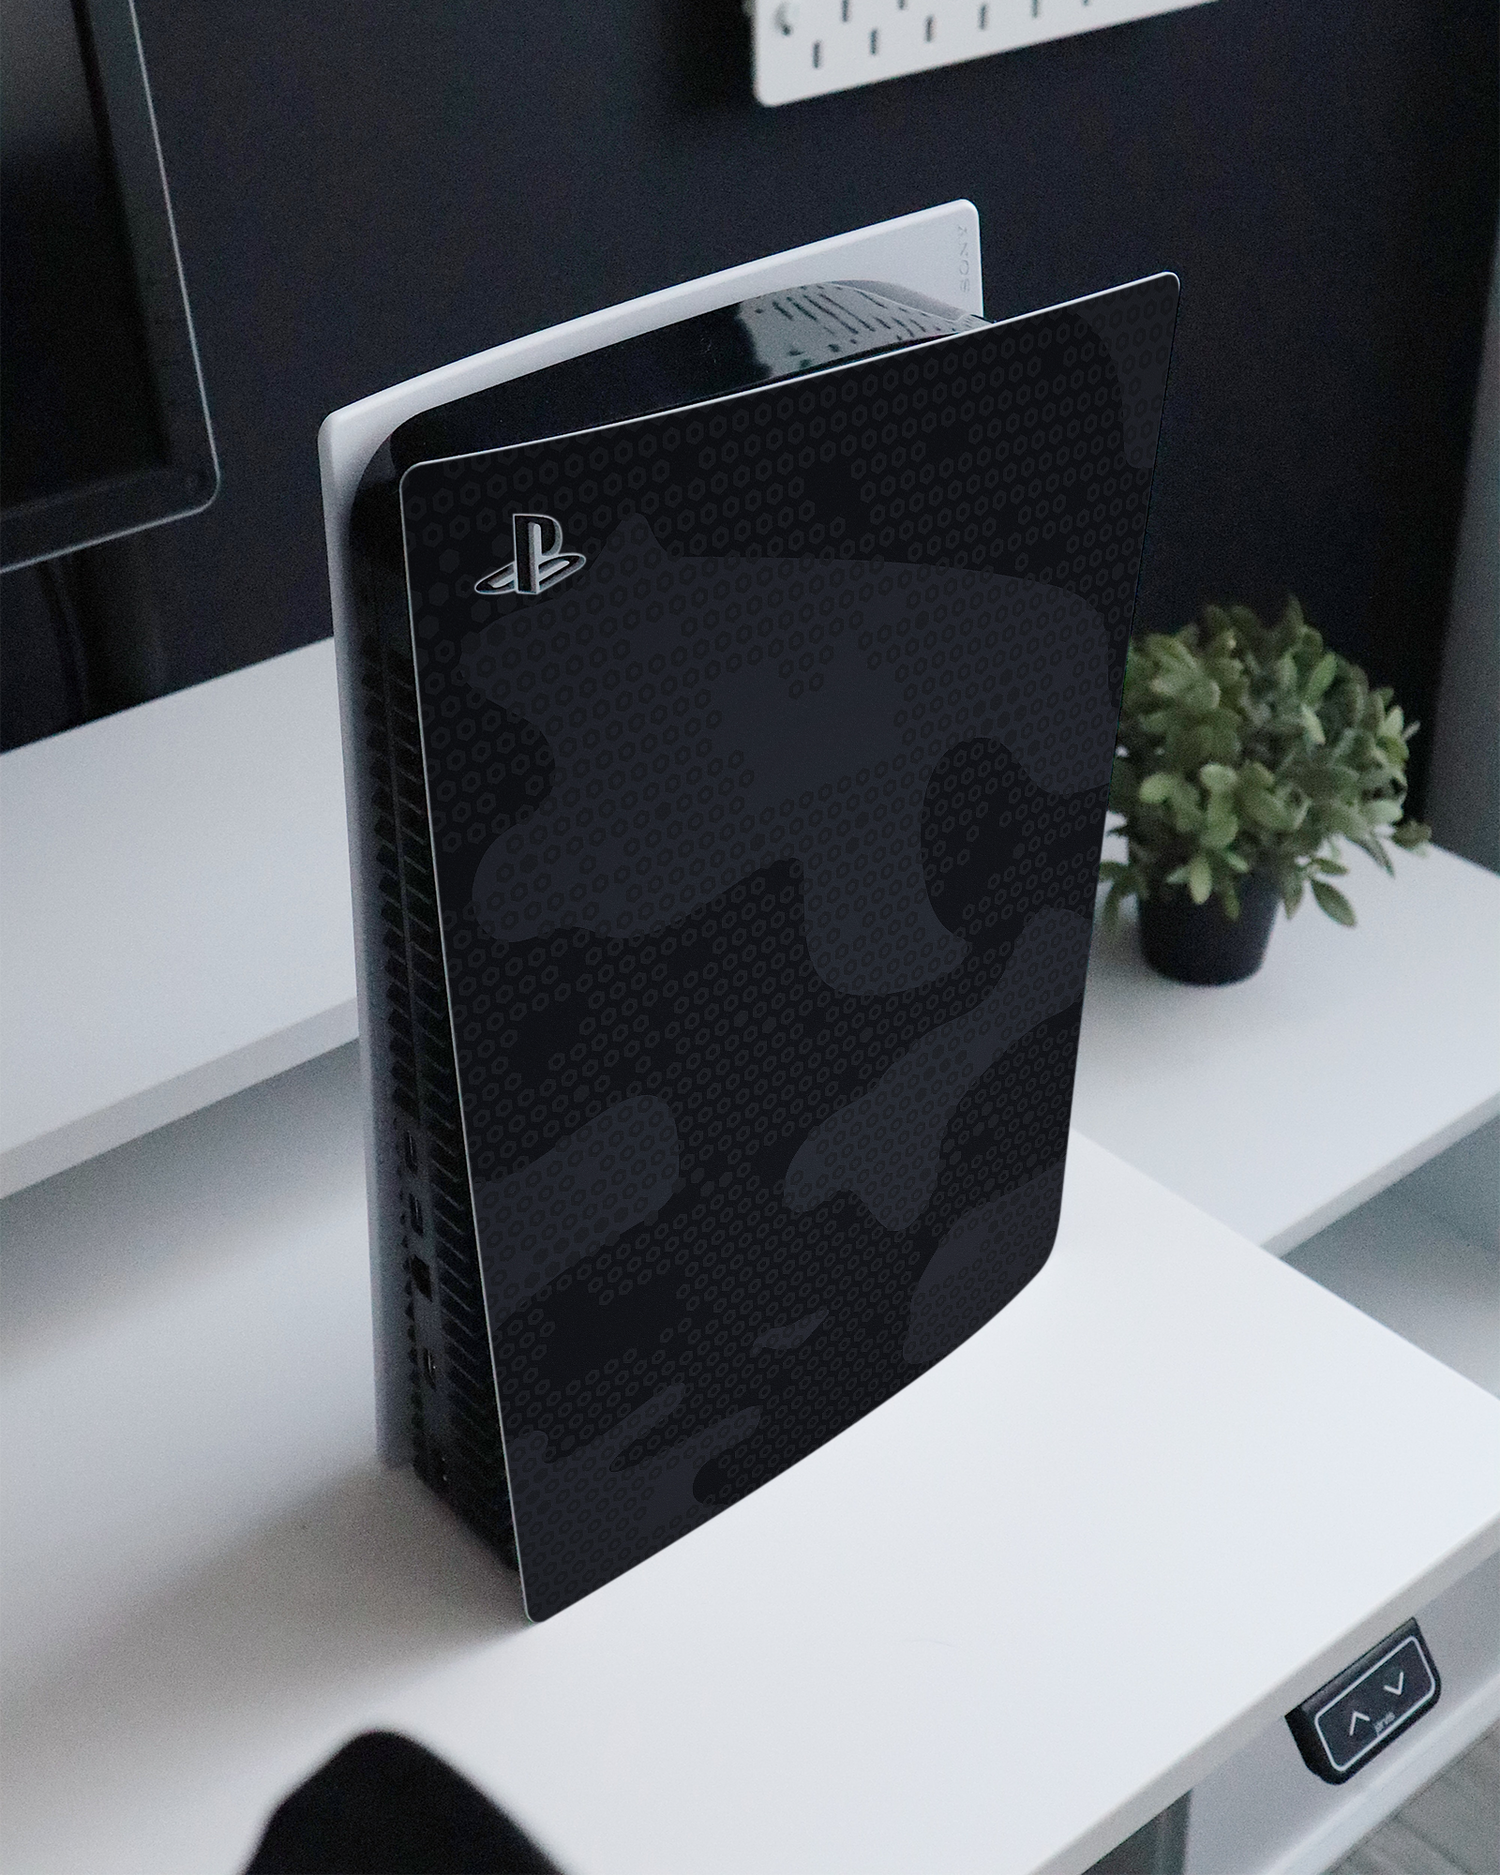 Spec Ops Dark Konsolen Aufkleber für Sony PlayStation 5 Digital Edition auf einem Sideboard